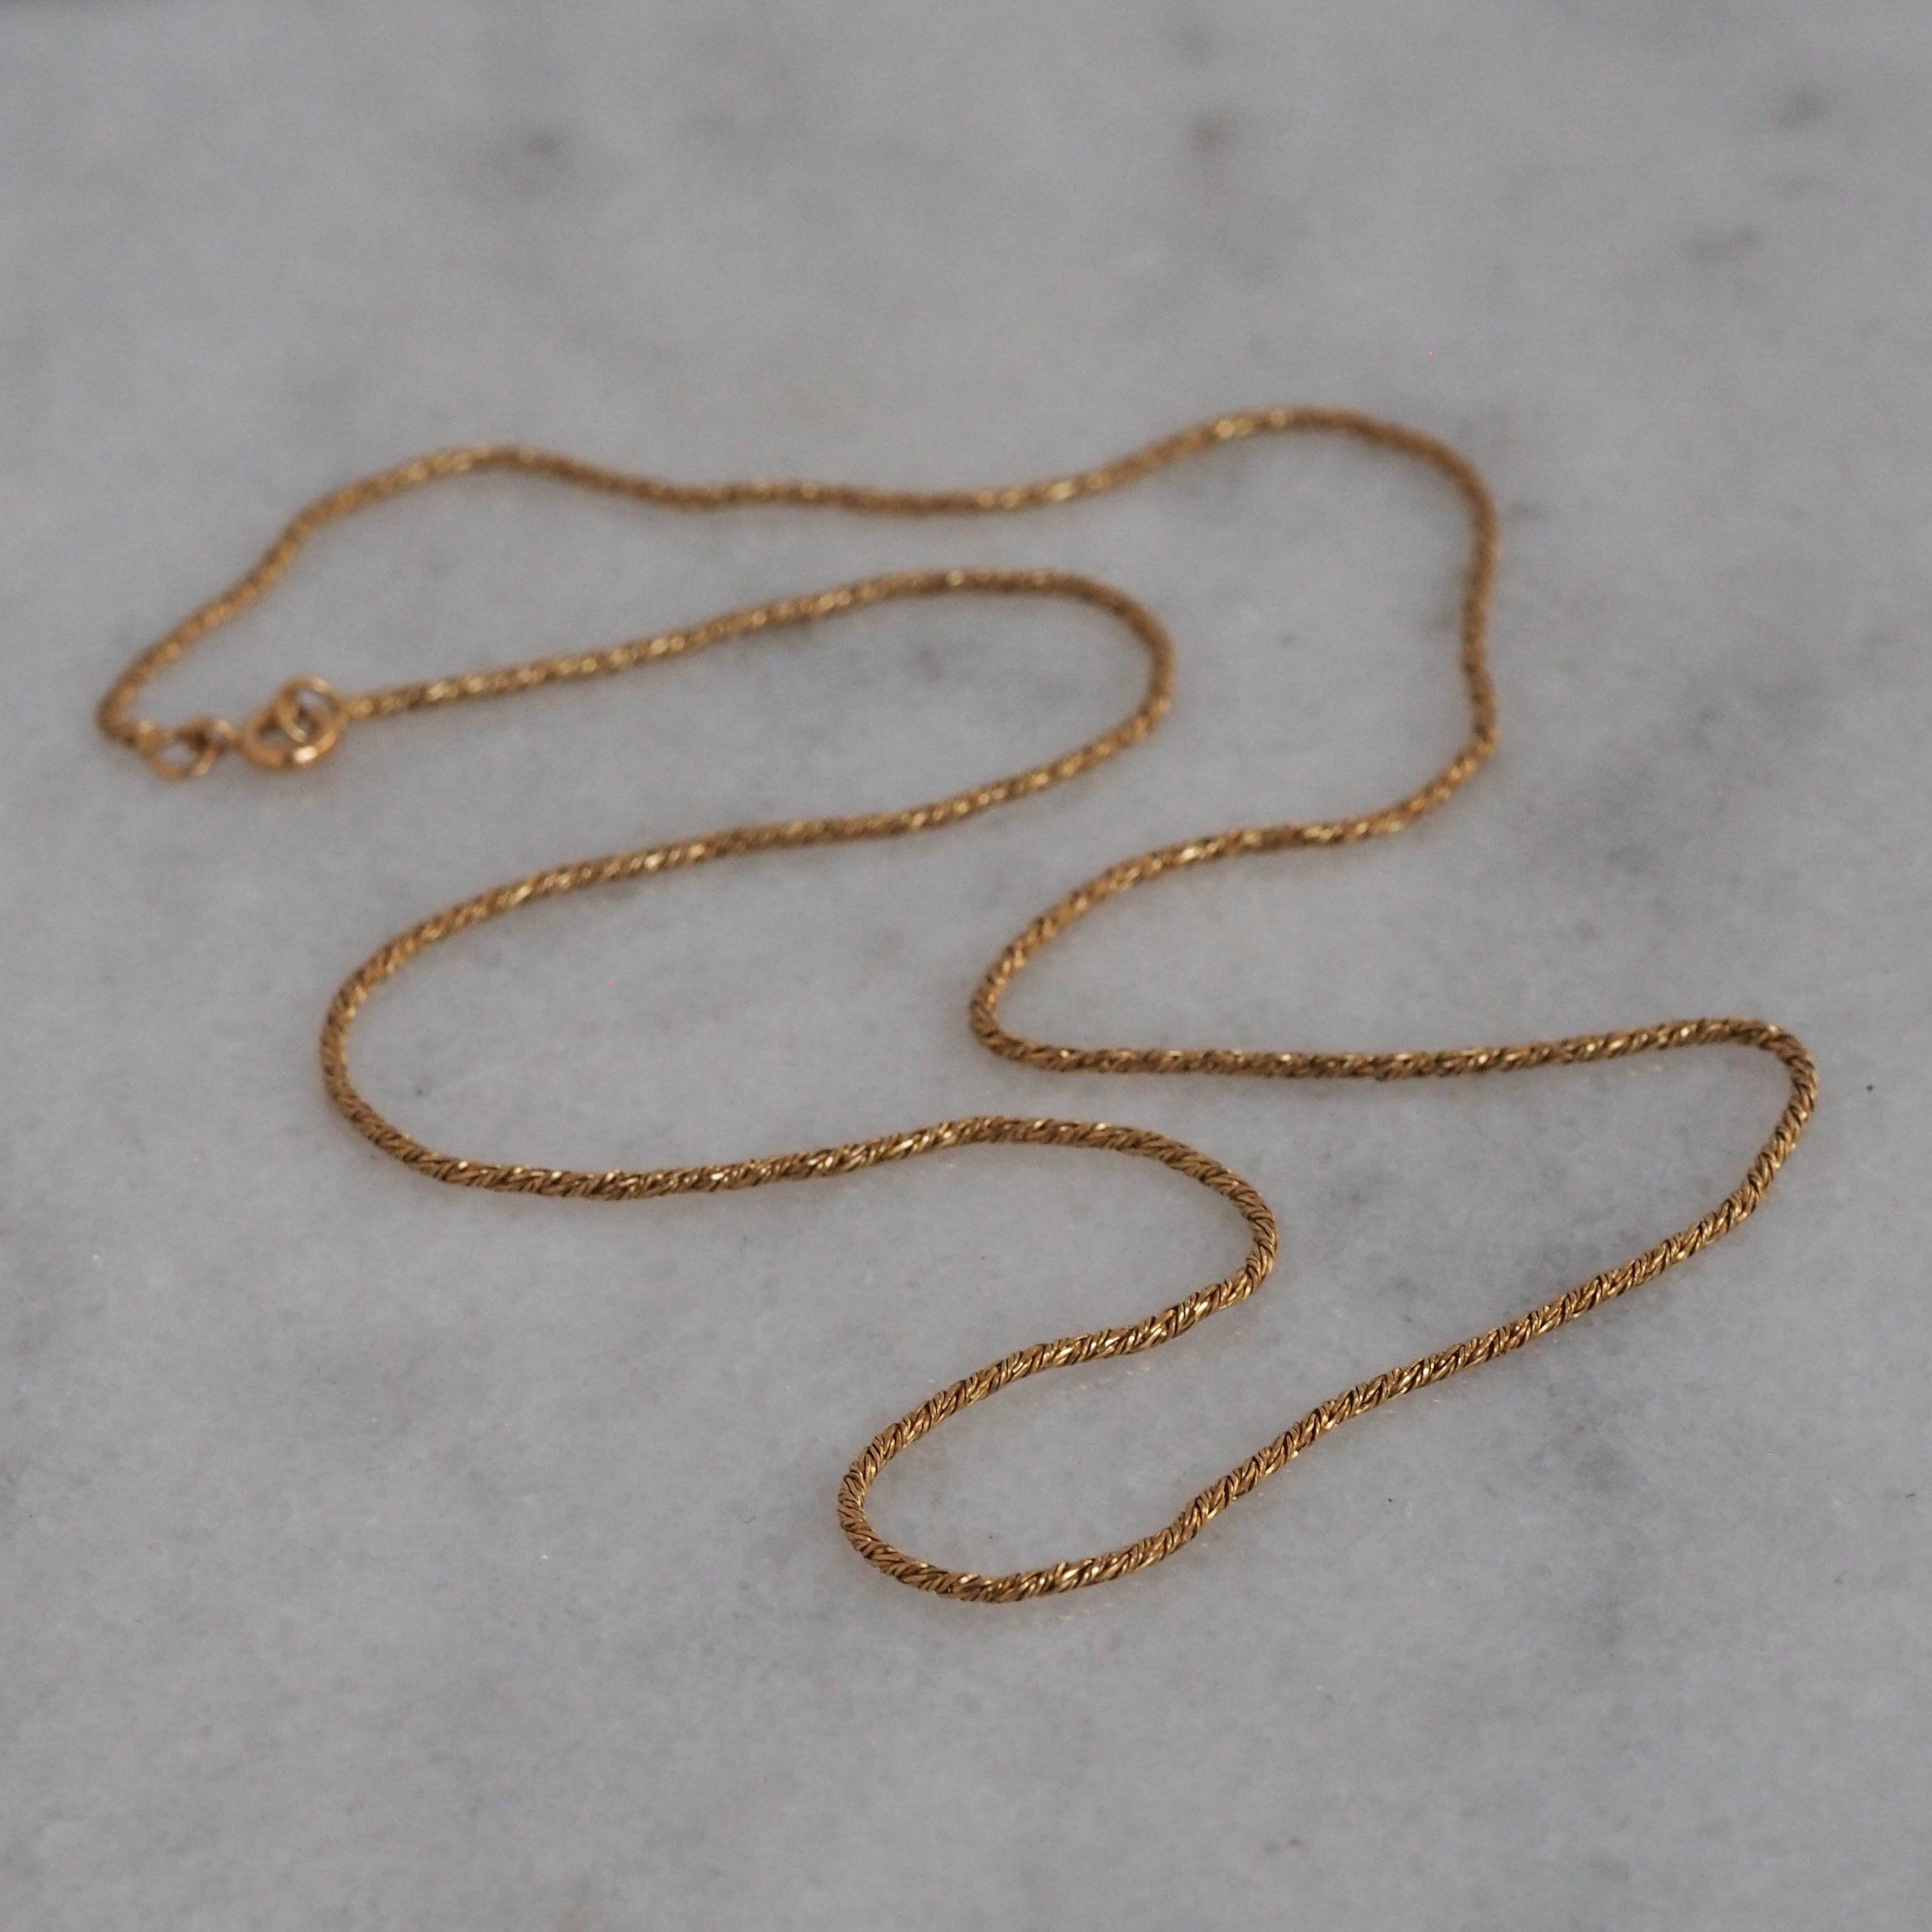 Vintage Portuguese 19k Gold Woven Chain Necklace